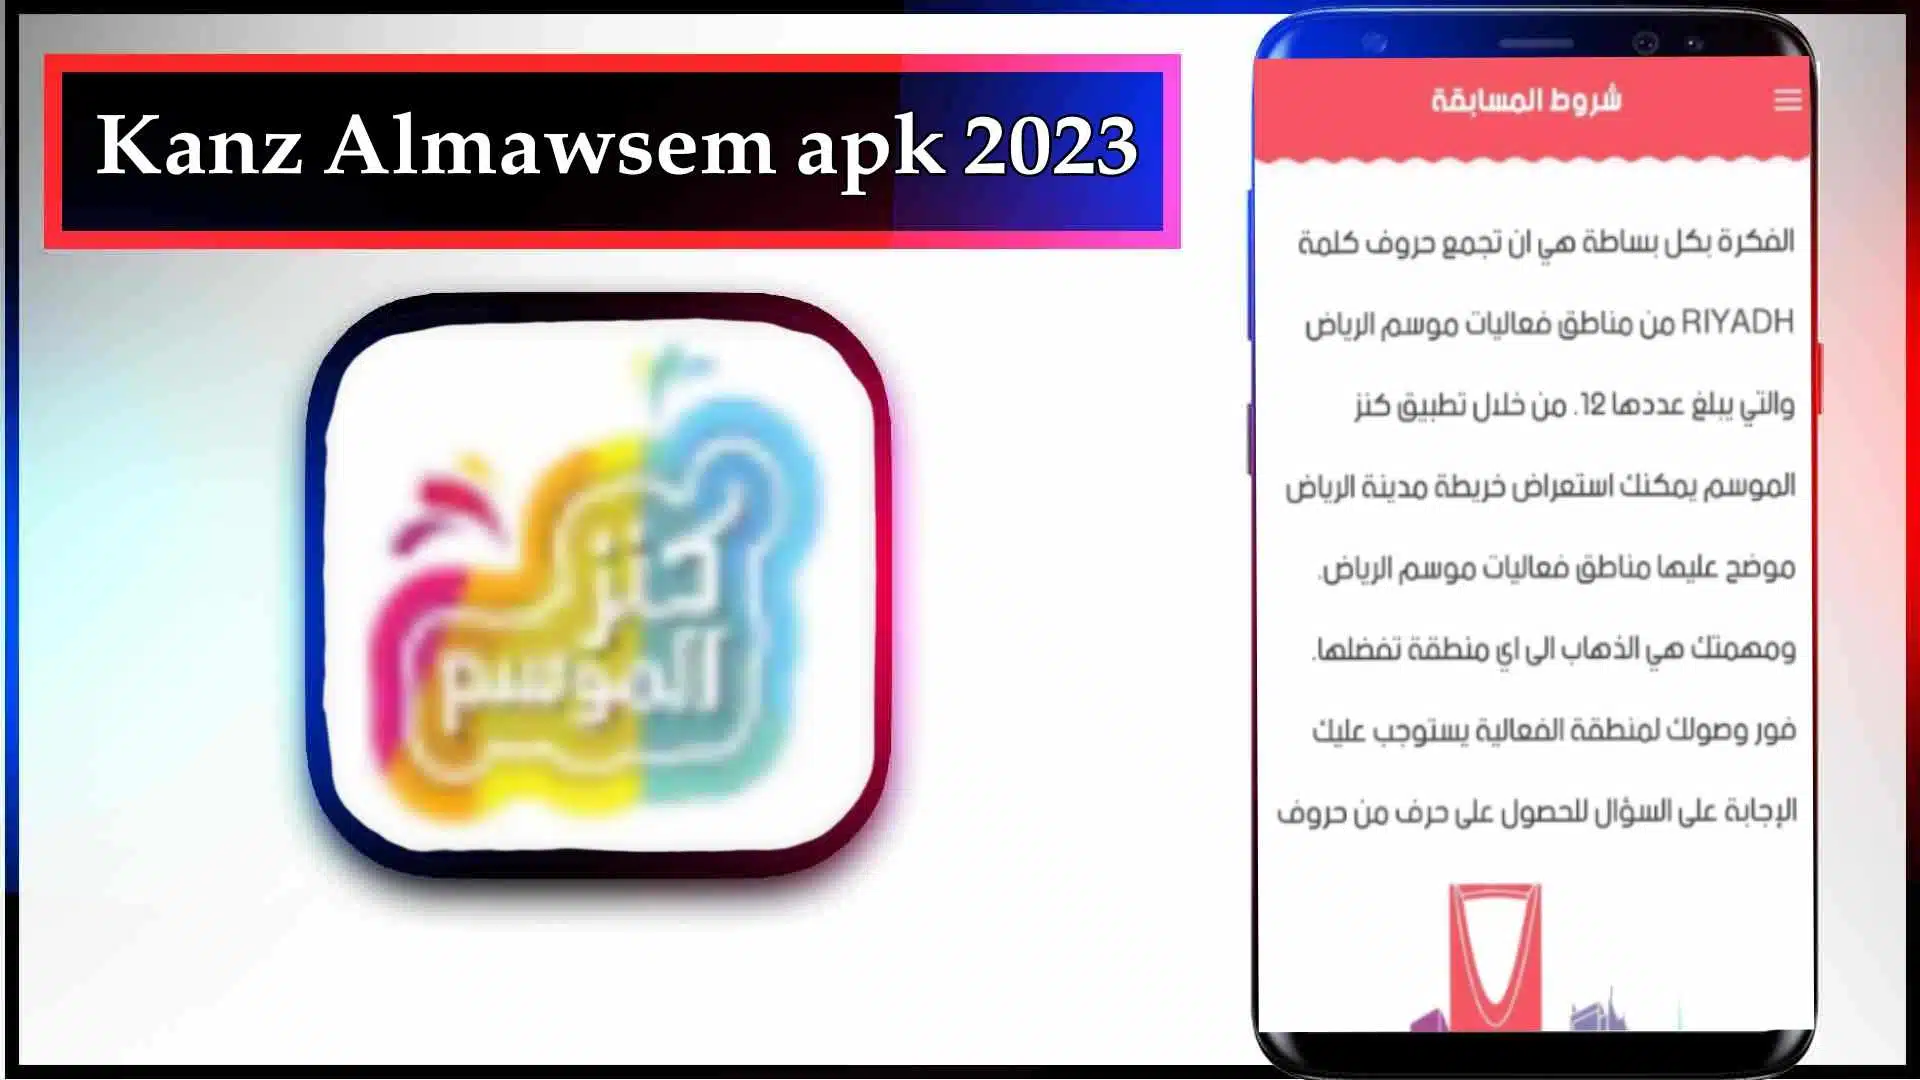 تحميل تطبيق كنز موسم الرياض Kanz Almawsem اخر اصدار للاندرويد وللايفون 2023